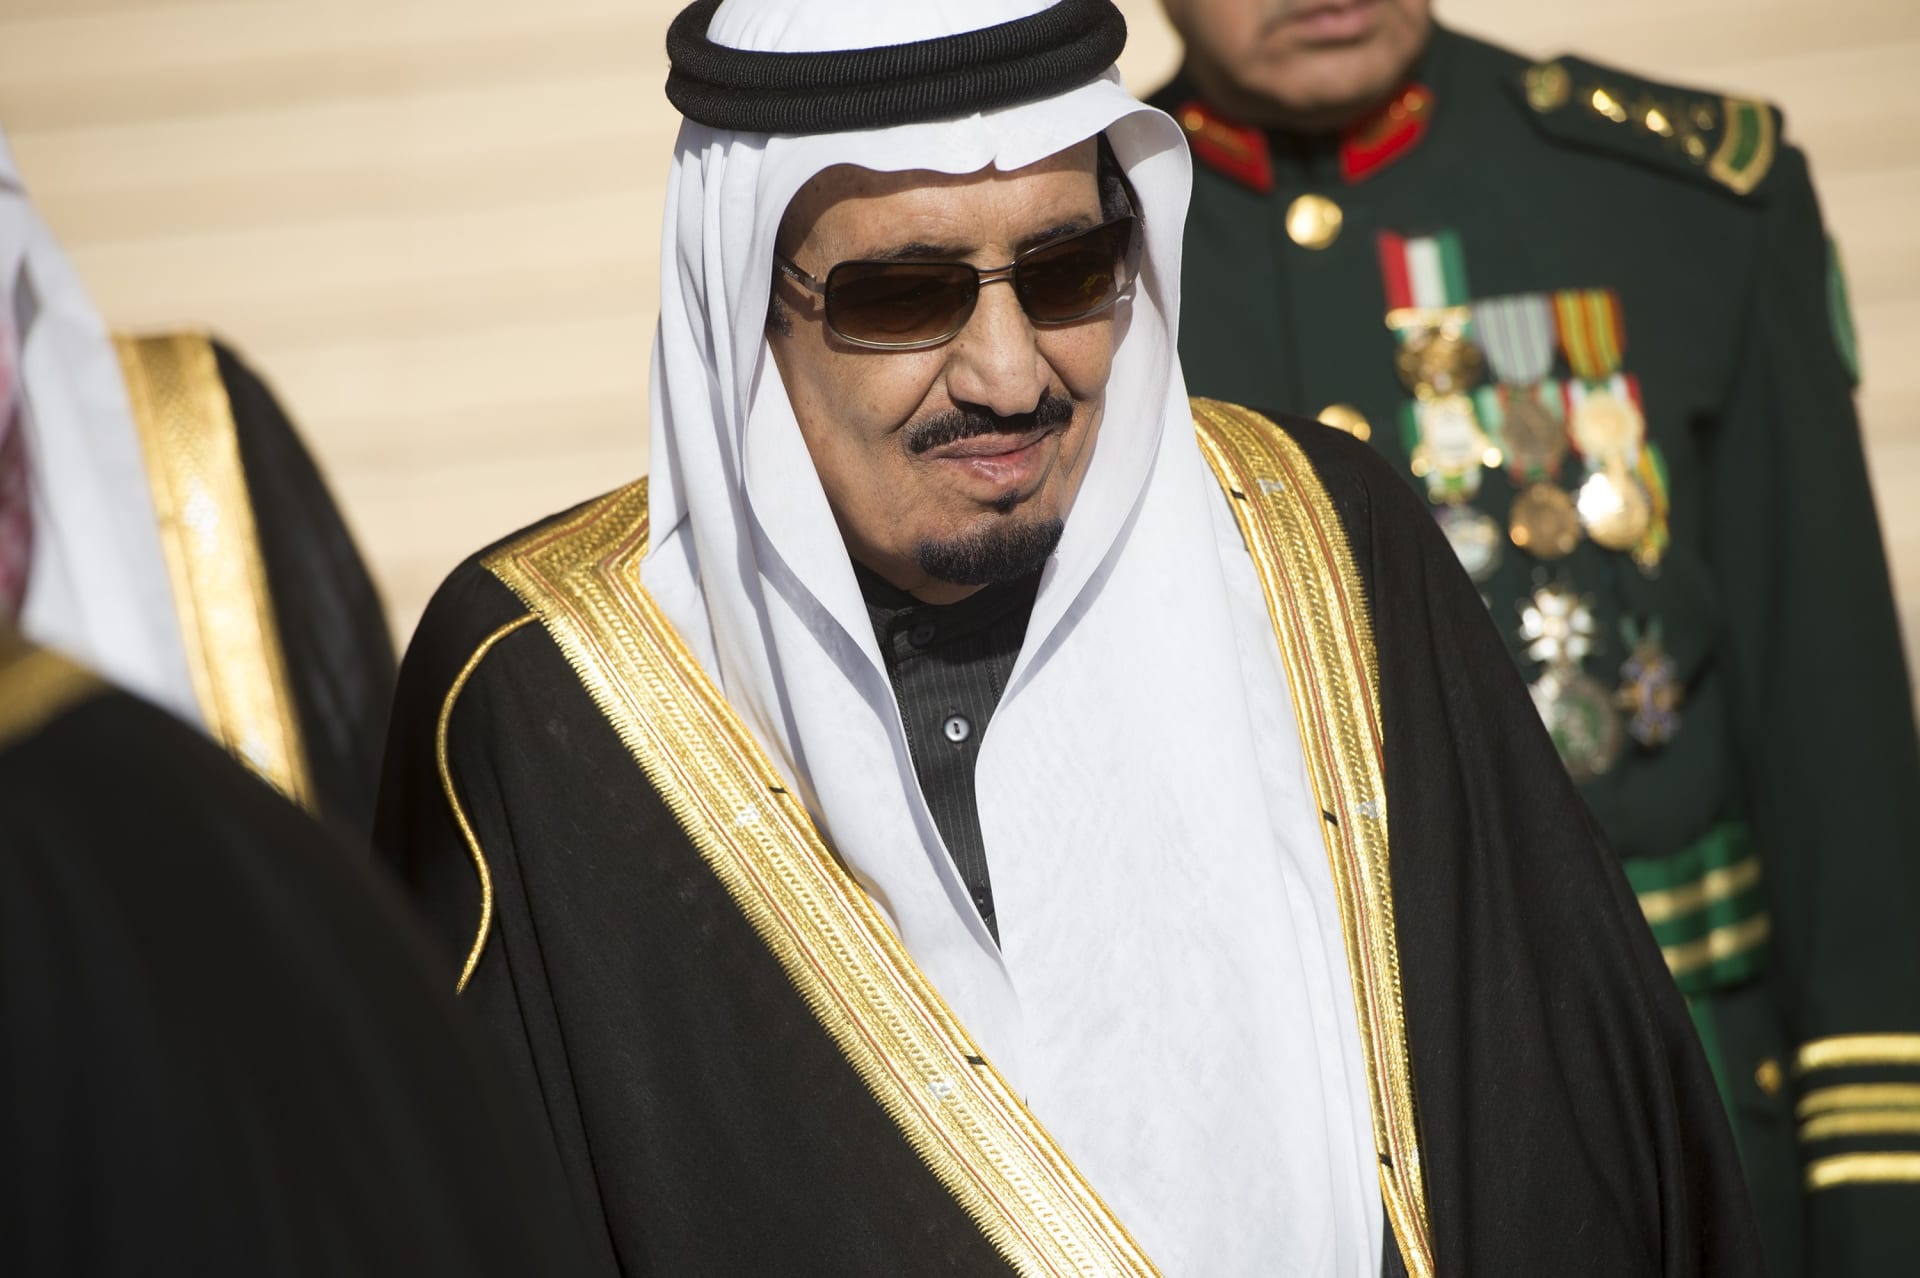 السعودية أوامر ملكية تشمل تغييرات في قيادات الحج والطيران المدني والإدارية العليا